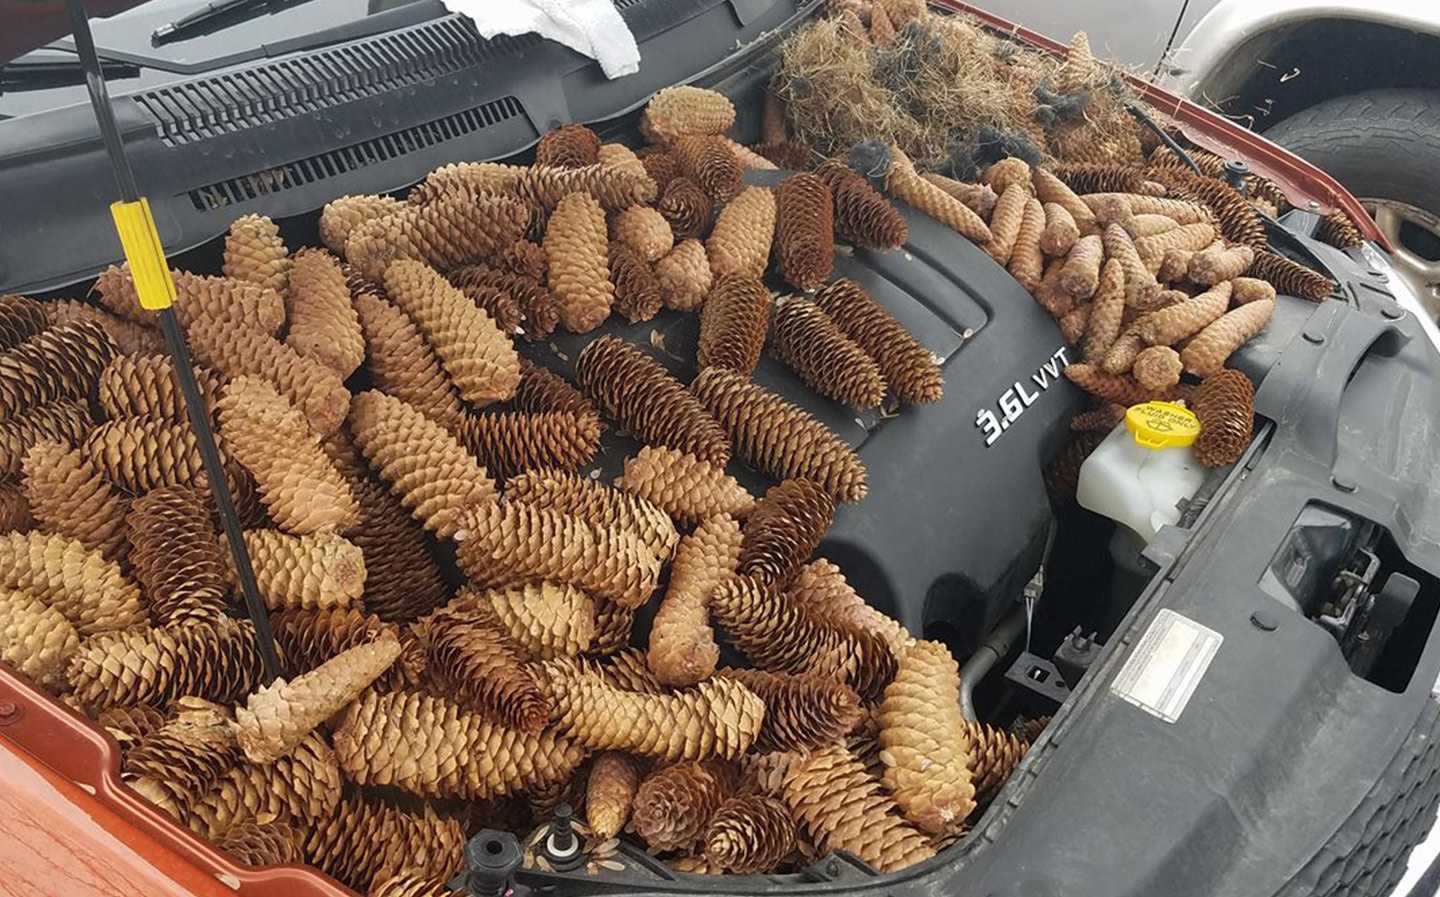 Squirrels stash pine cones in car engine bay